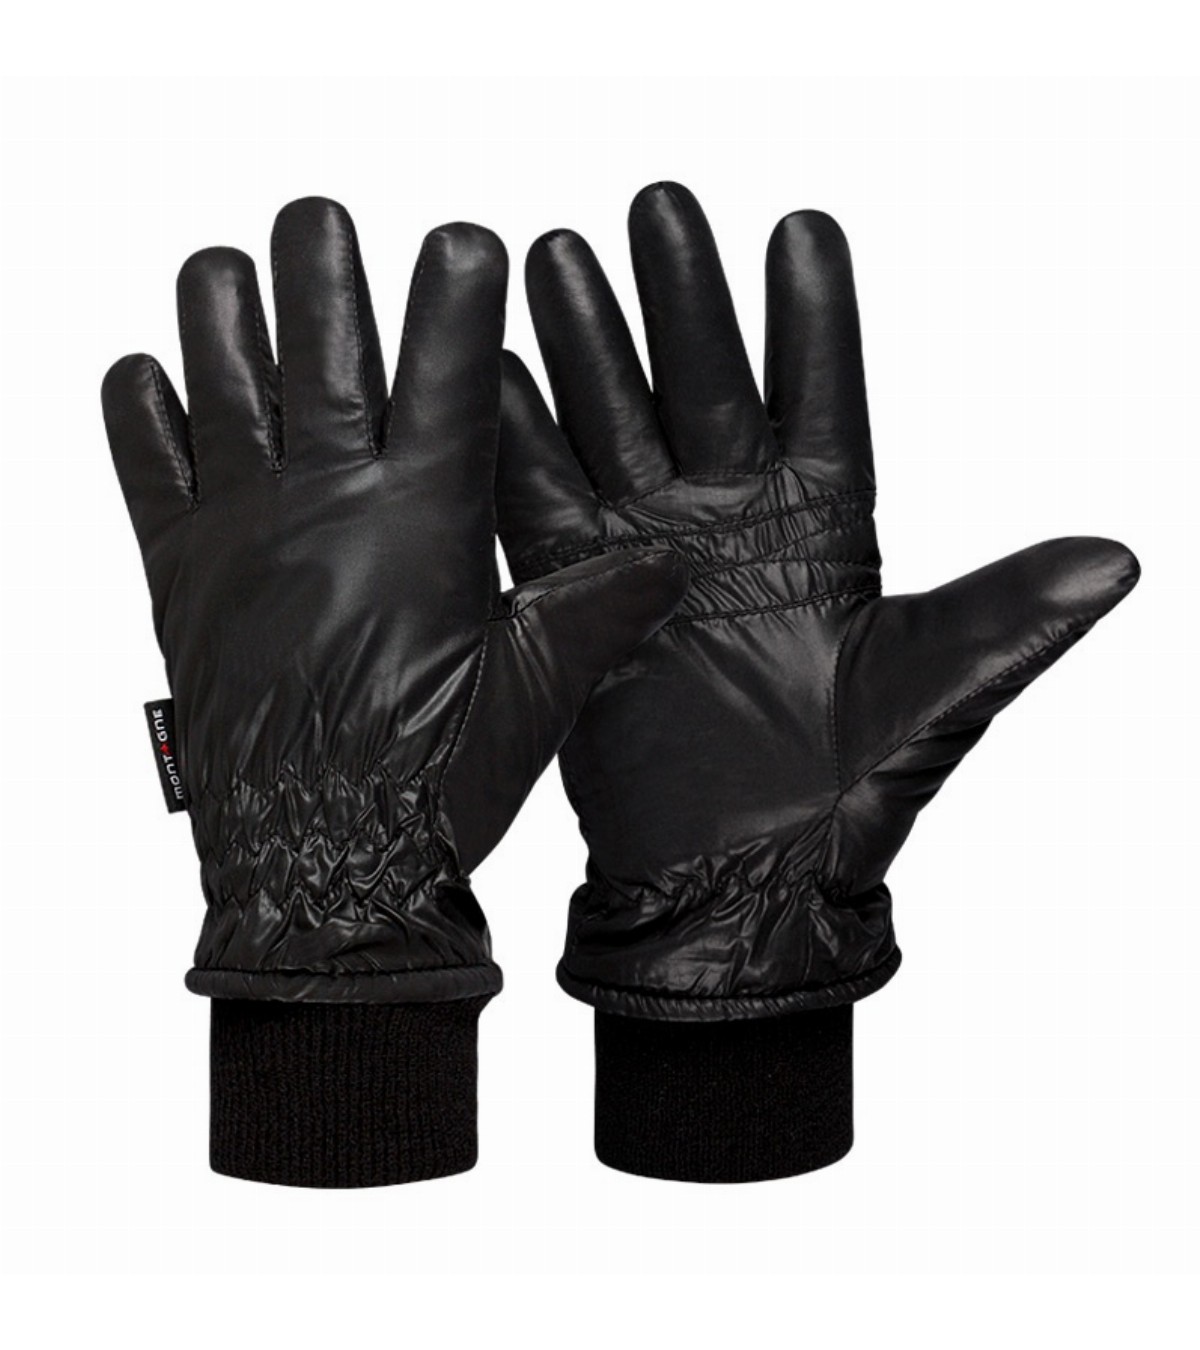 Montagne: guantes, guante, guantes de, guantes para, guantes hombre, urbanos, guantes para moto, guantes térmicos, guantes de polar, guantes para hombre, guantes técnicos, guantes para el accesorios de